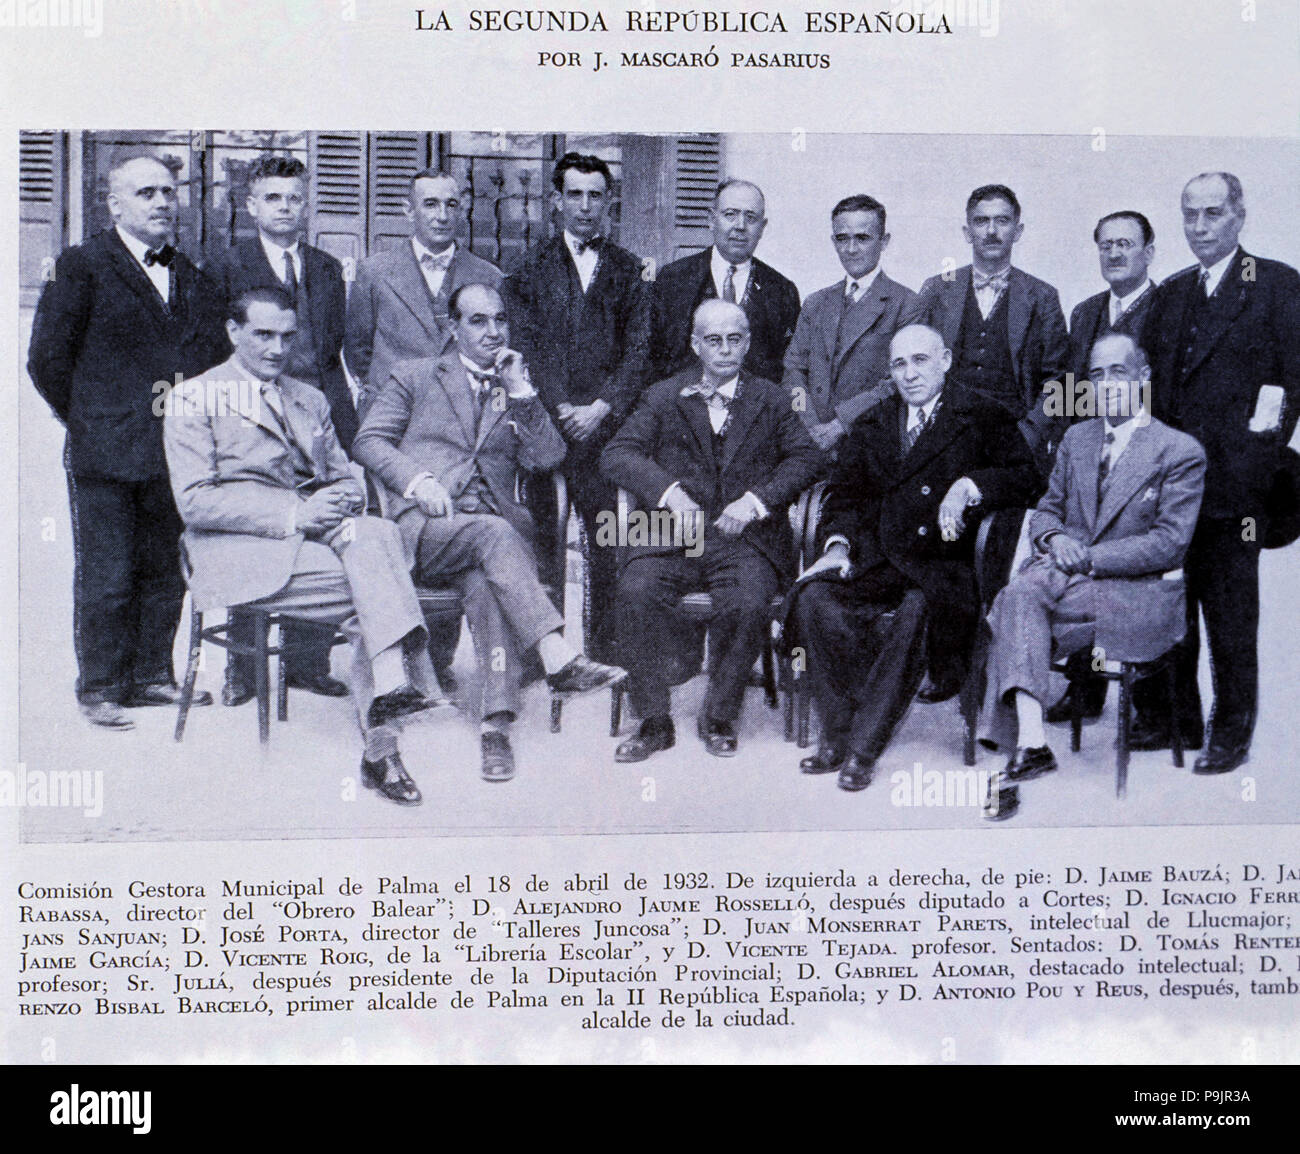 Municipal Commission of Palma, April 18, 1932. Stock Photo